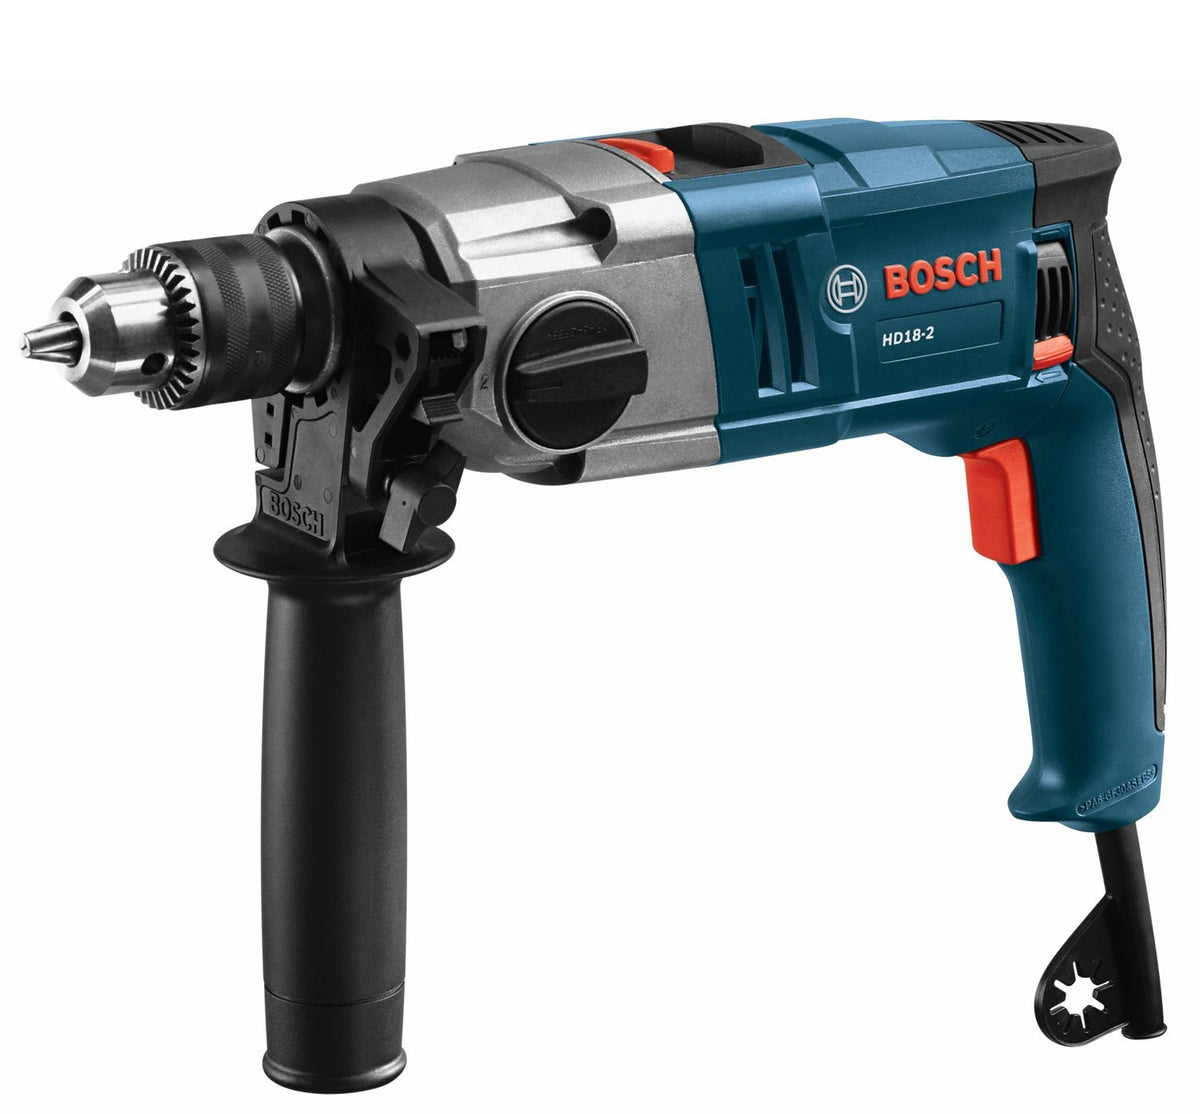 Bosch HD18-2 VSR Hammer Drill, Blue, 8.5 amps